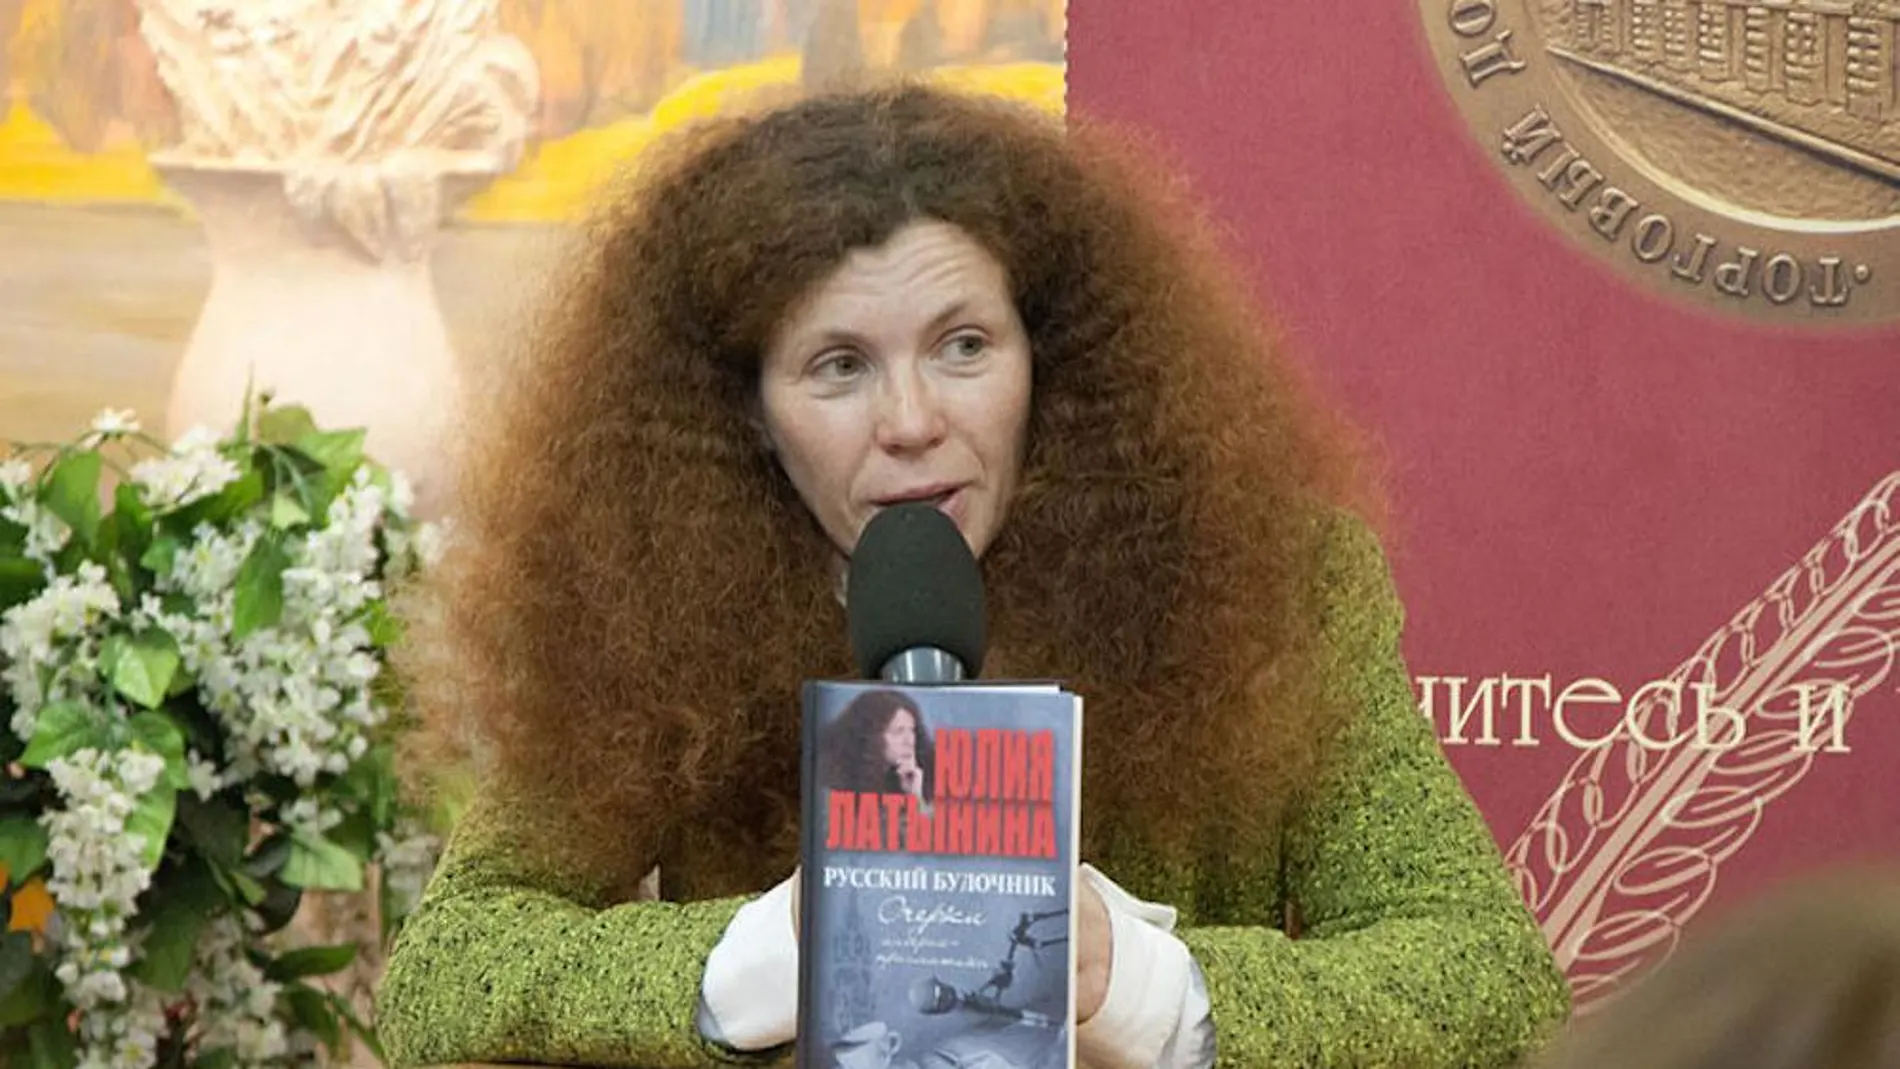 La periodista rusa Yulia Latinina